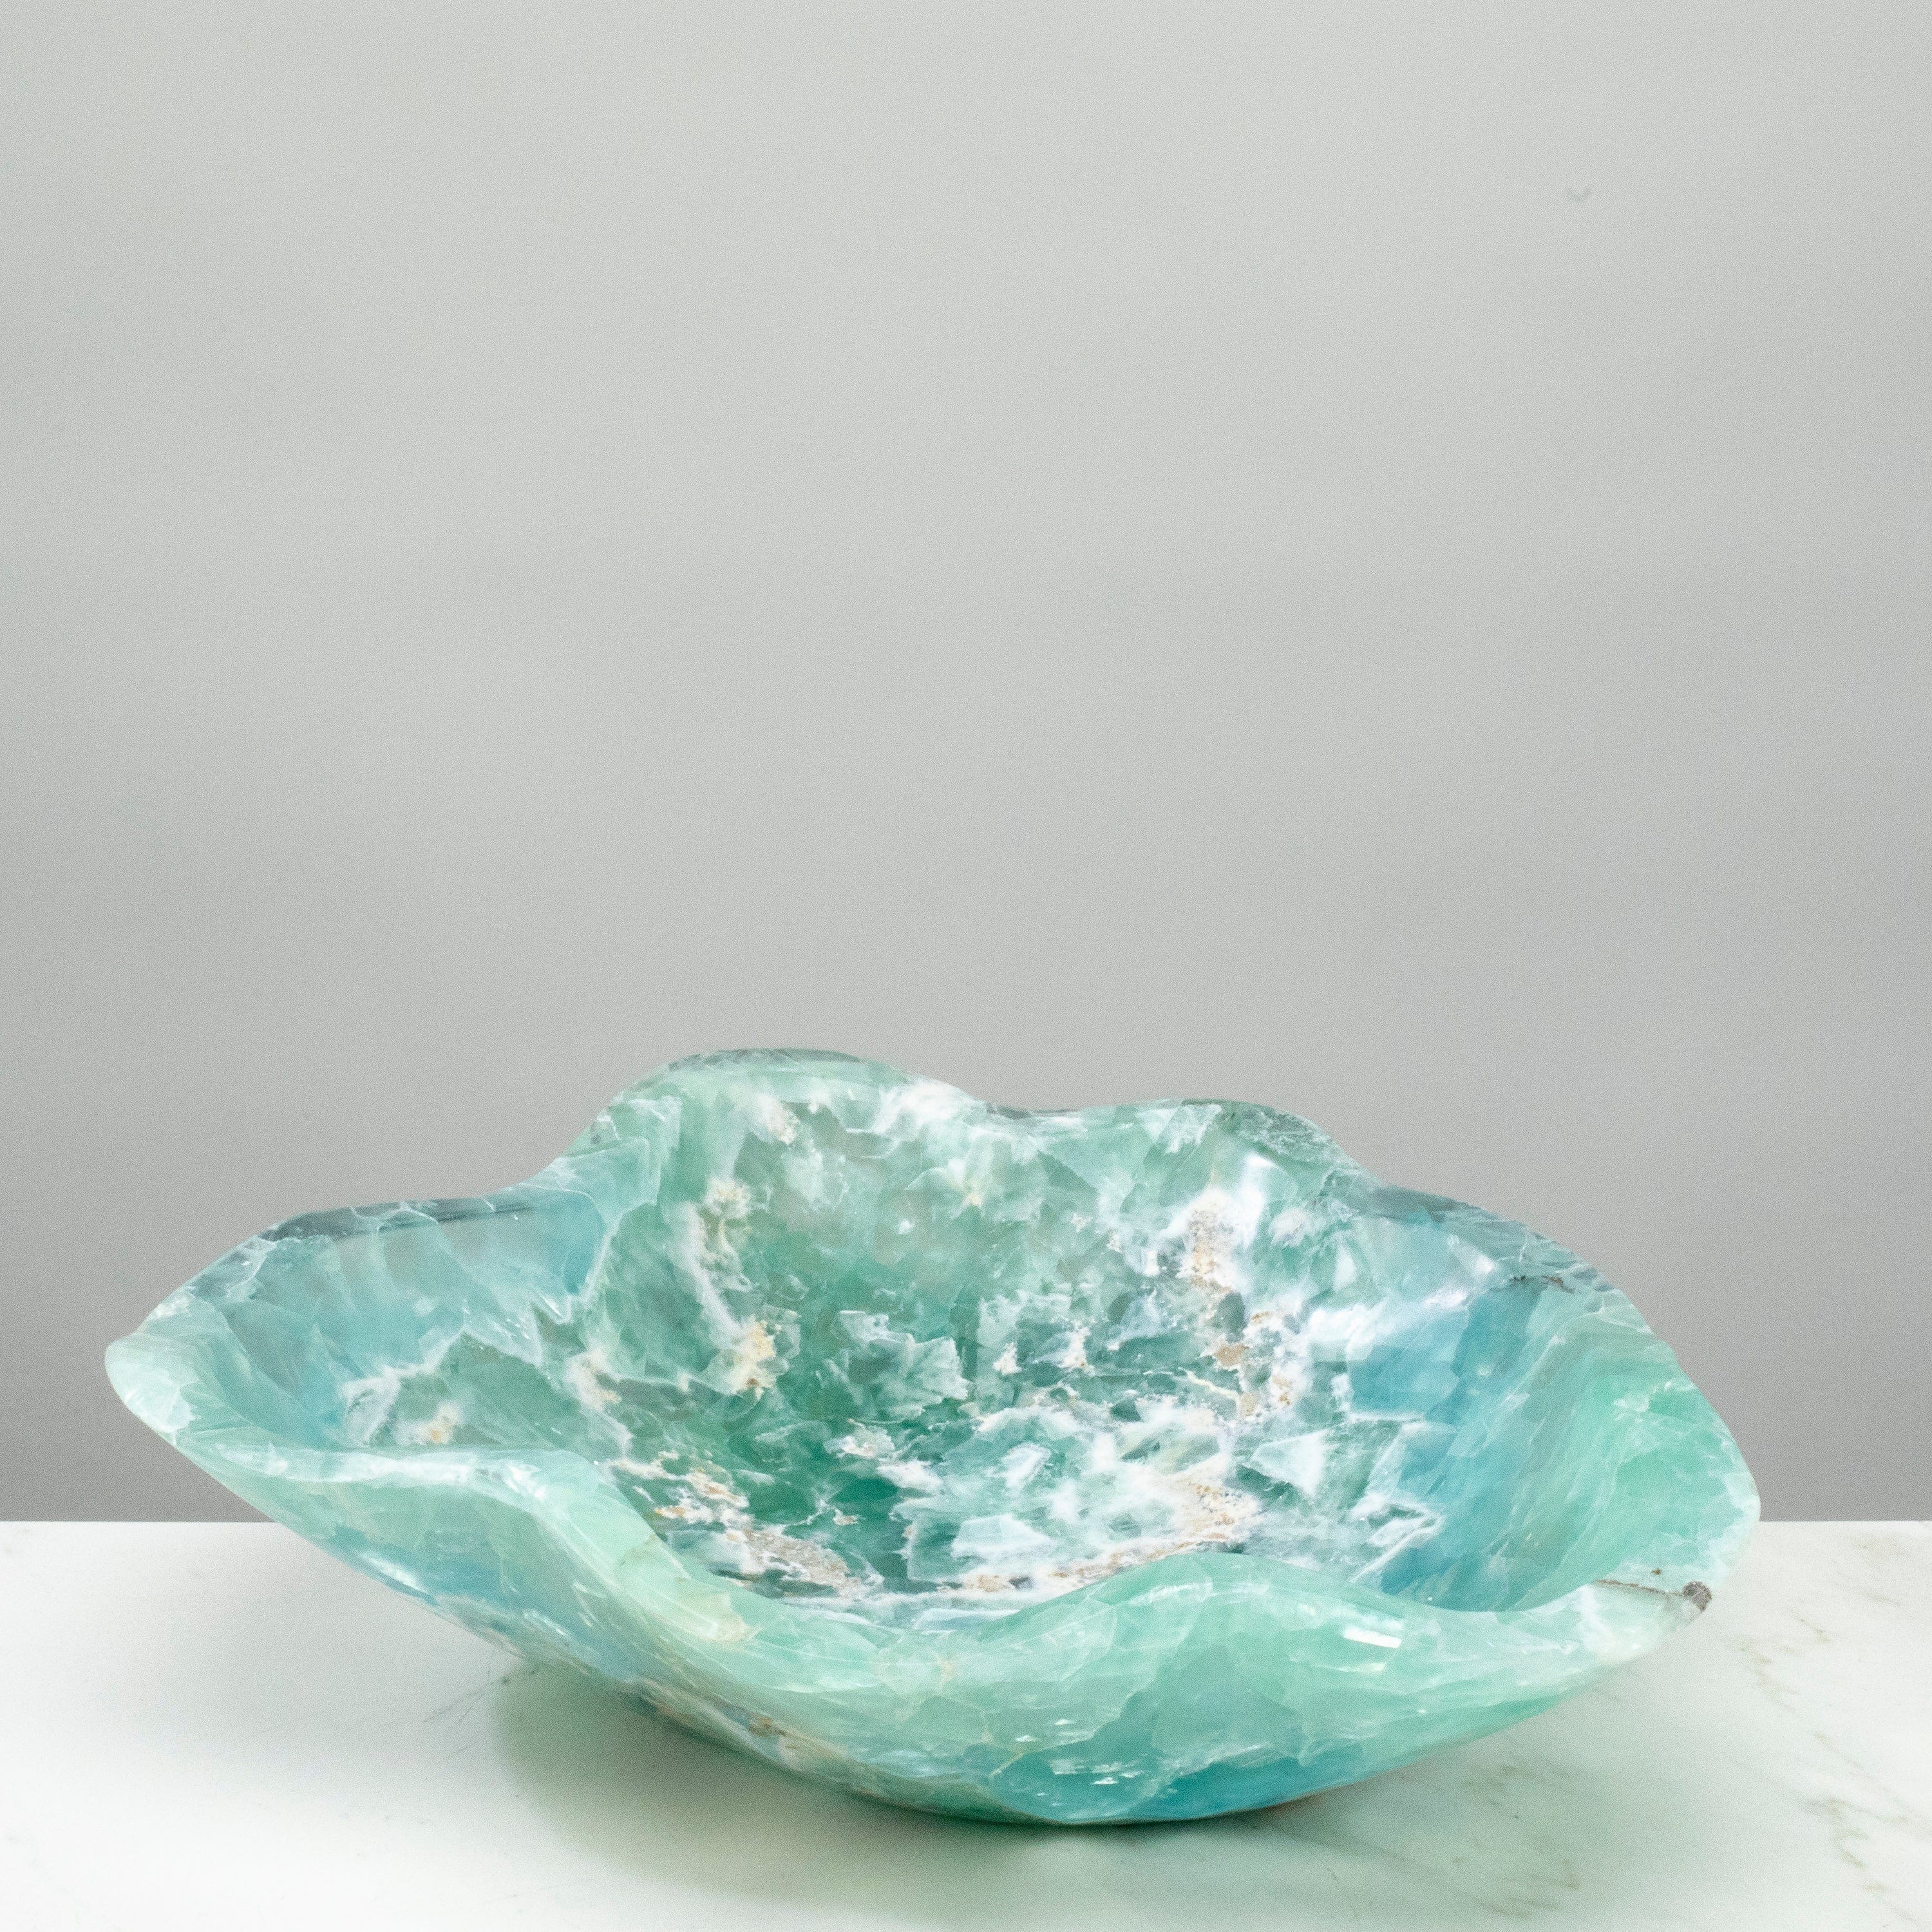 KALIFANO Gemstone Bowls Natural Blue / Green Fluorite Bowl 14.5" BFL7200.003